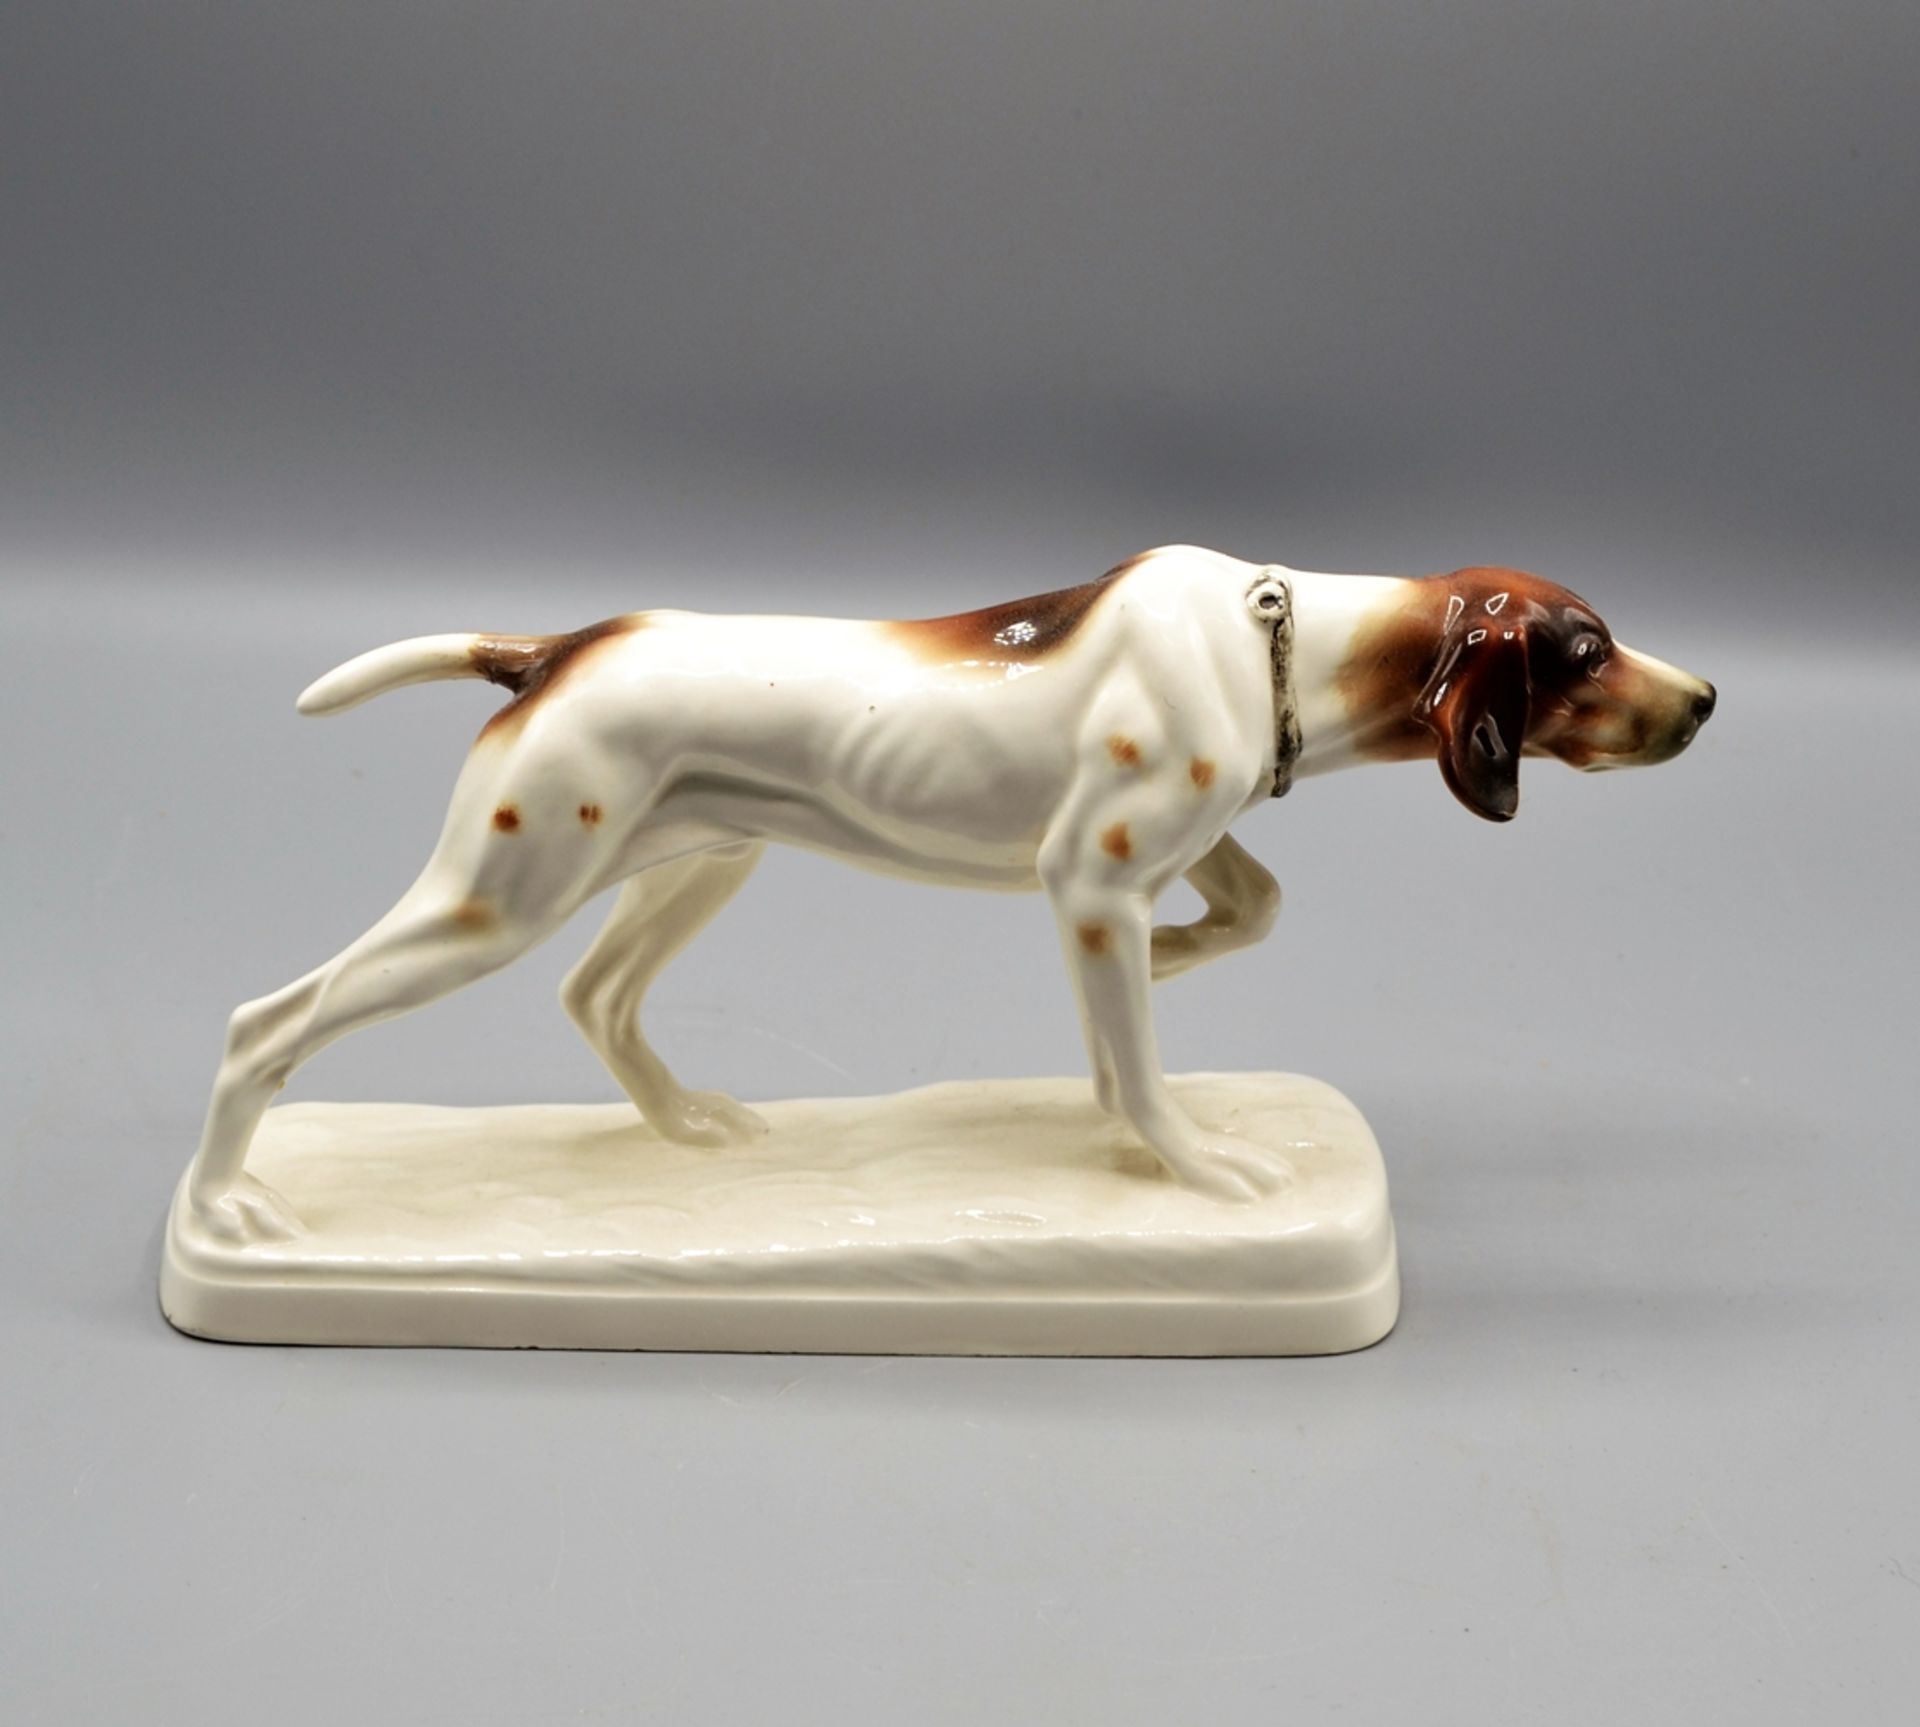 Jagdhund Hund Porzellanfigur 20 Jh., bemalt, Bodenmarke, Schwanz restaurierter Bruch, ca. 35 cm - Bild 2 aus 3